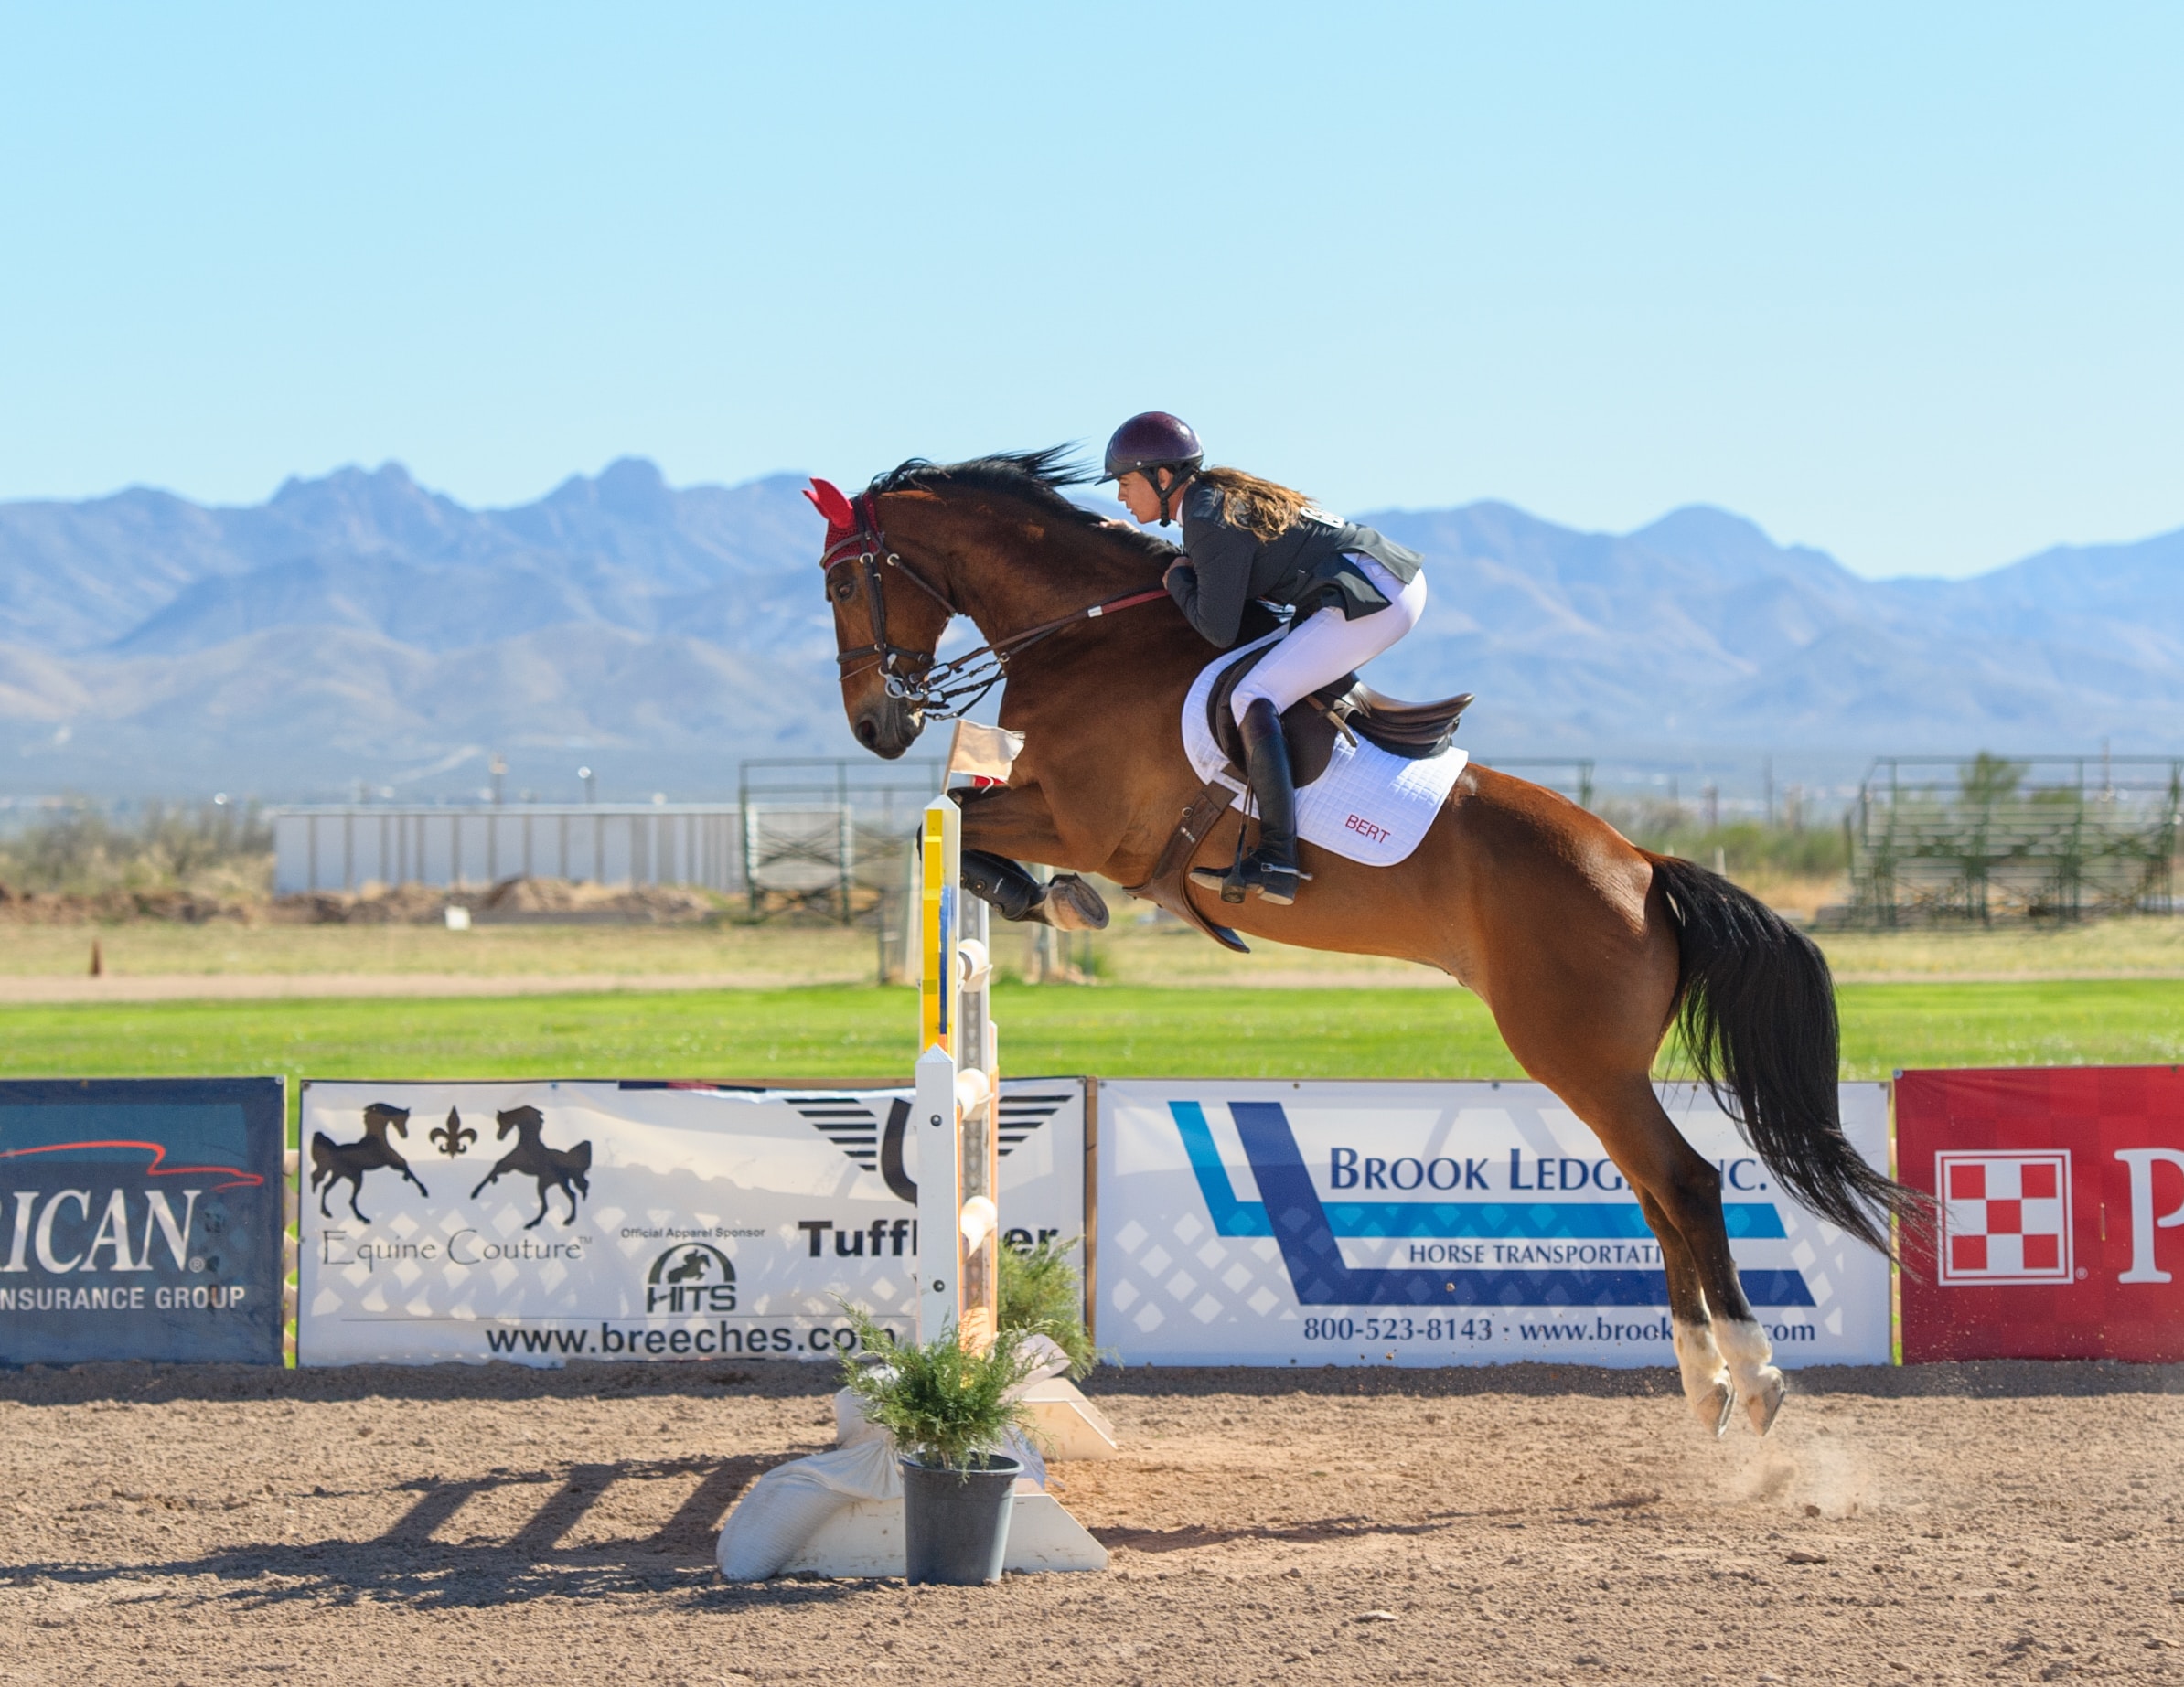 Bilden visar en häst med ryttare som tävlar. Ridbyxor med rätt passform är viktigt vid tävlingar och vardagsridning.